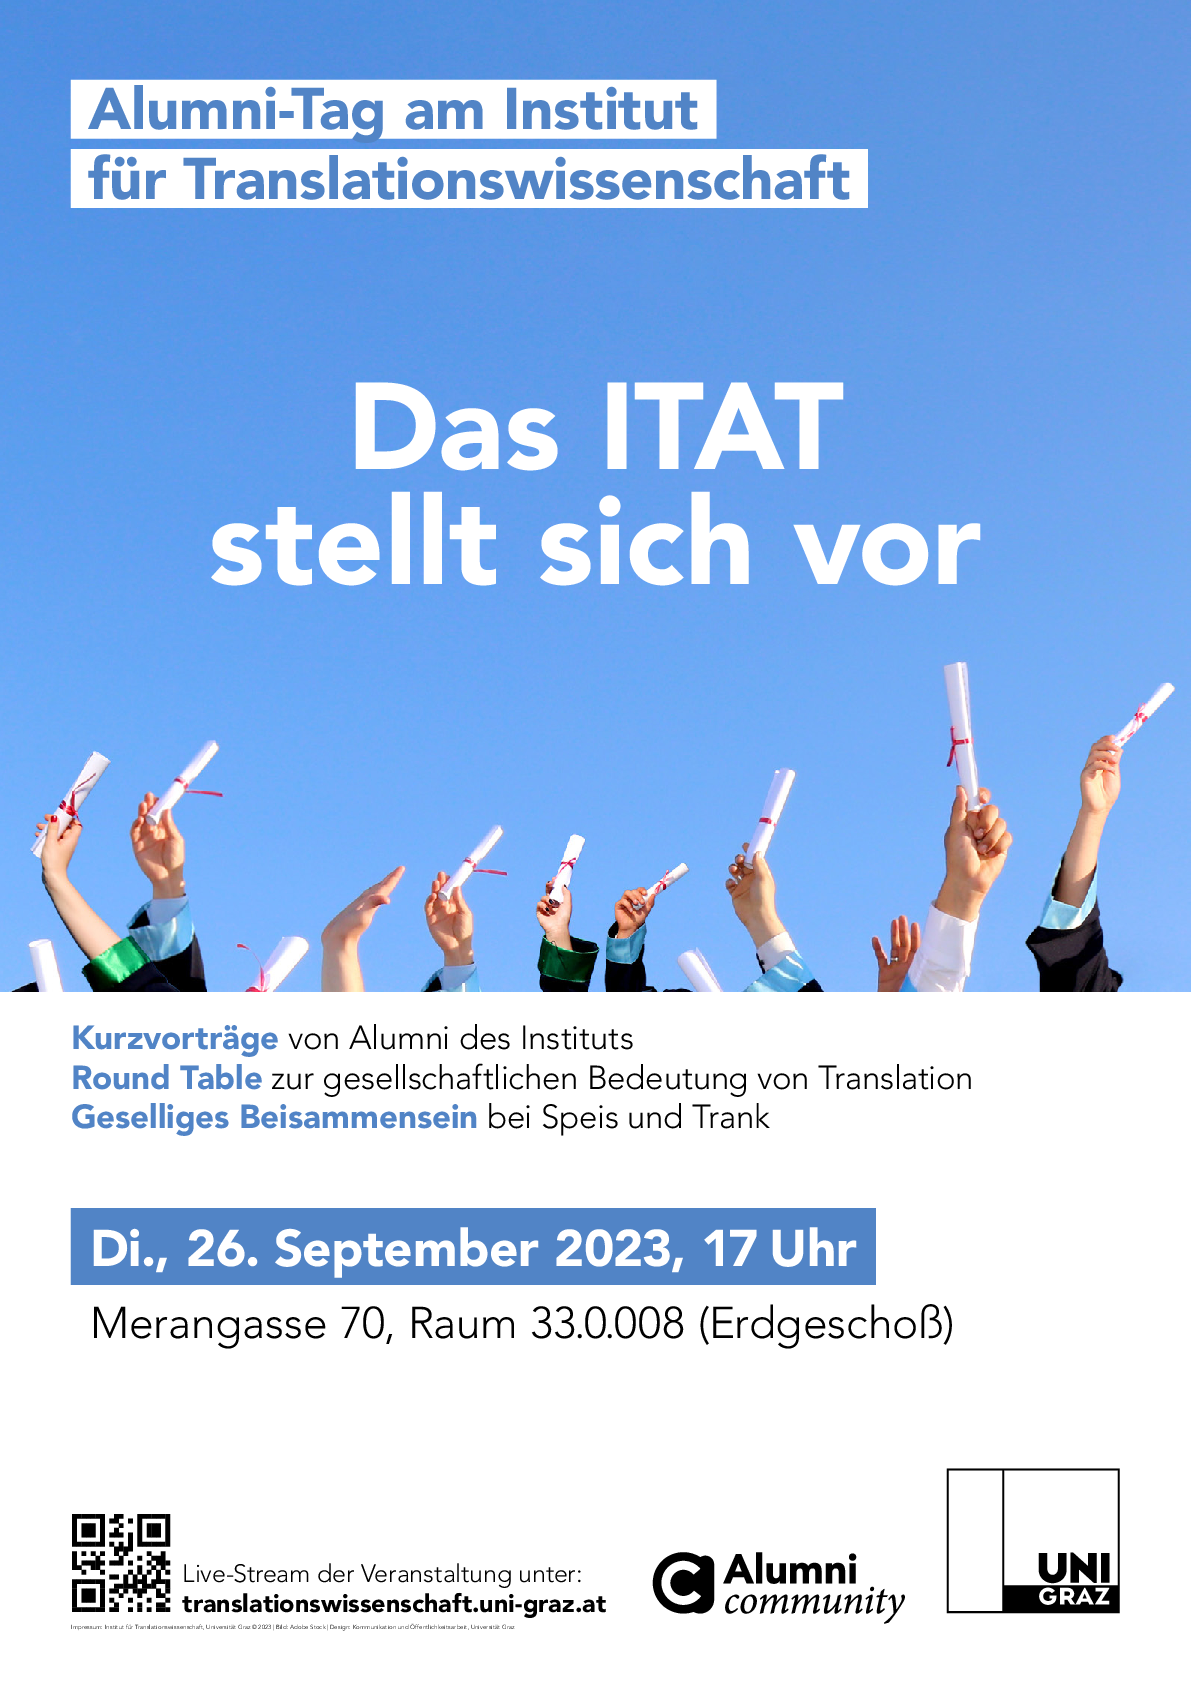 Poster zum Alumni-Tag am Institut für Translationswissenschaft am 26.09.2023 